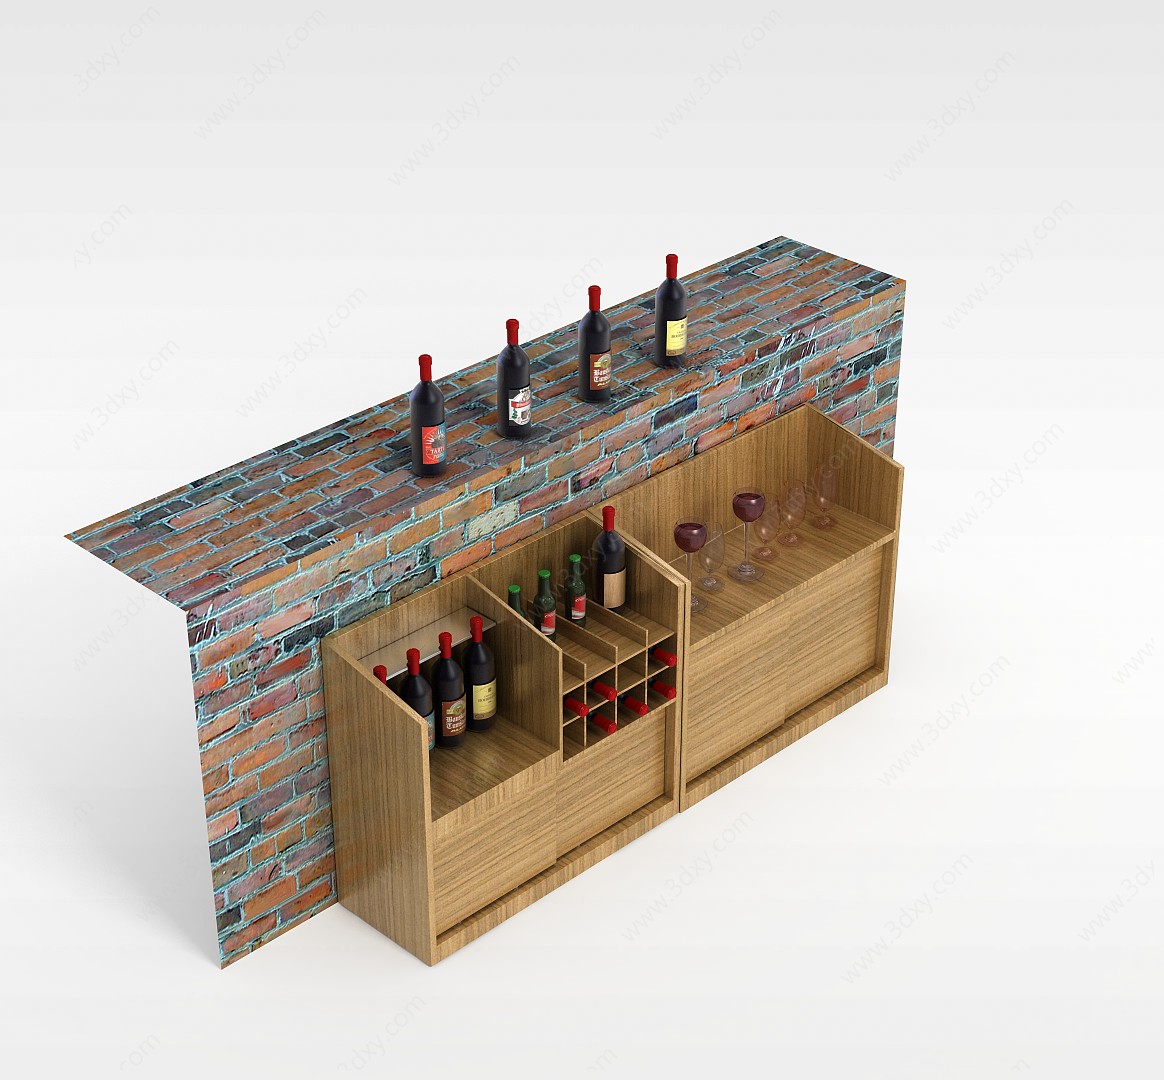 酒柜3D模型